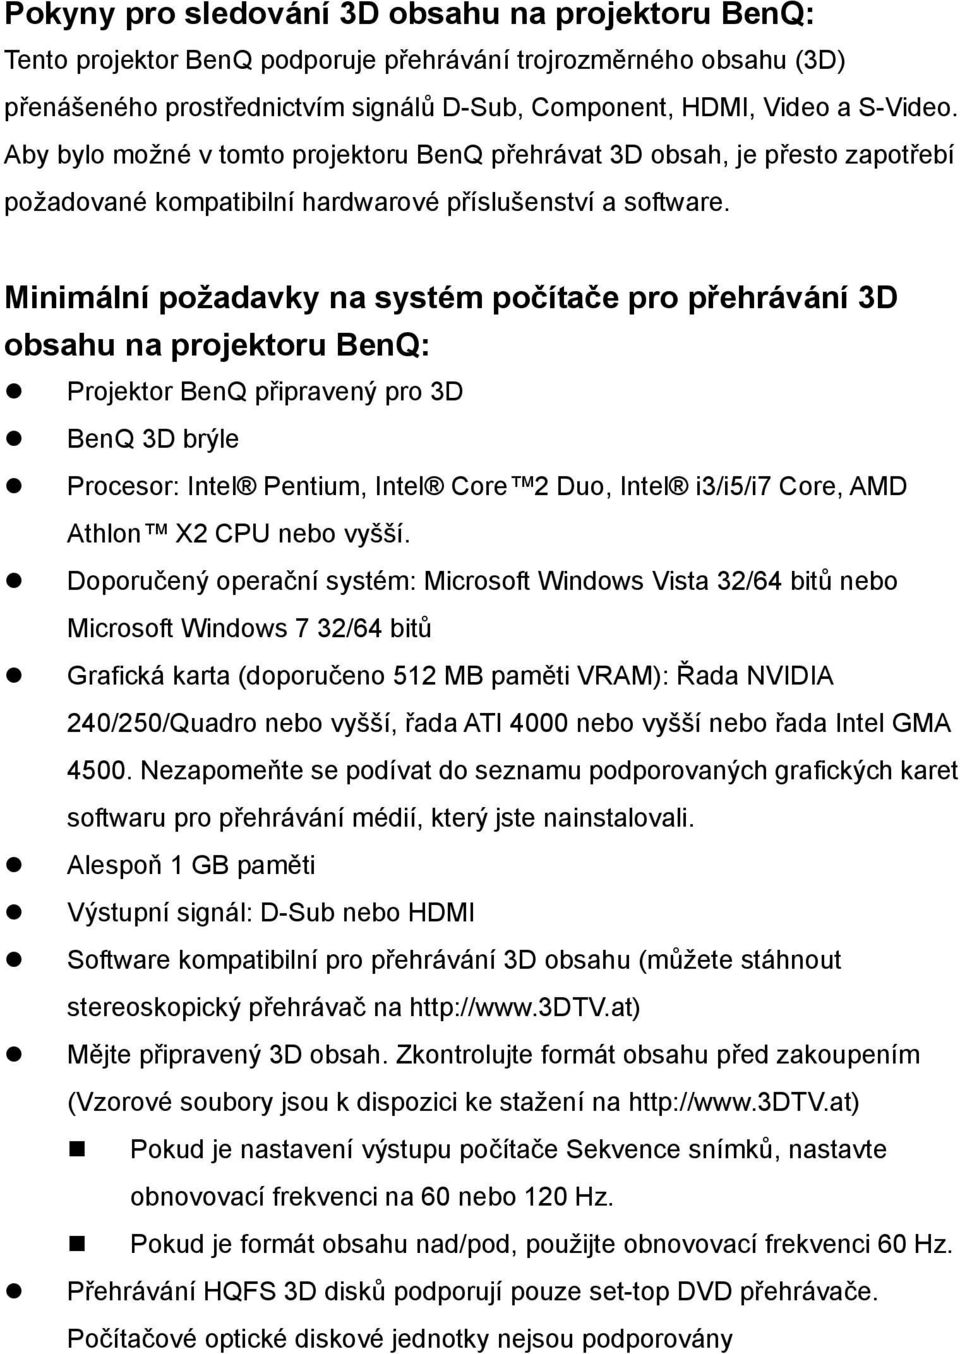 Minimální požadavky na systém počítače pro přehrávání 3D obsahu na projektoru BenQ: Projektor BenQ připravený pro 3D BenQ 3D brýle Procesor: Intel Pentium, Intel Core 2 Duo, Intel i3/i5/i7 Core, AMD